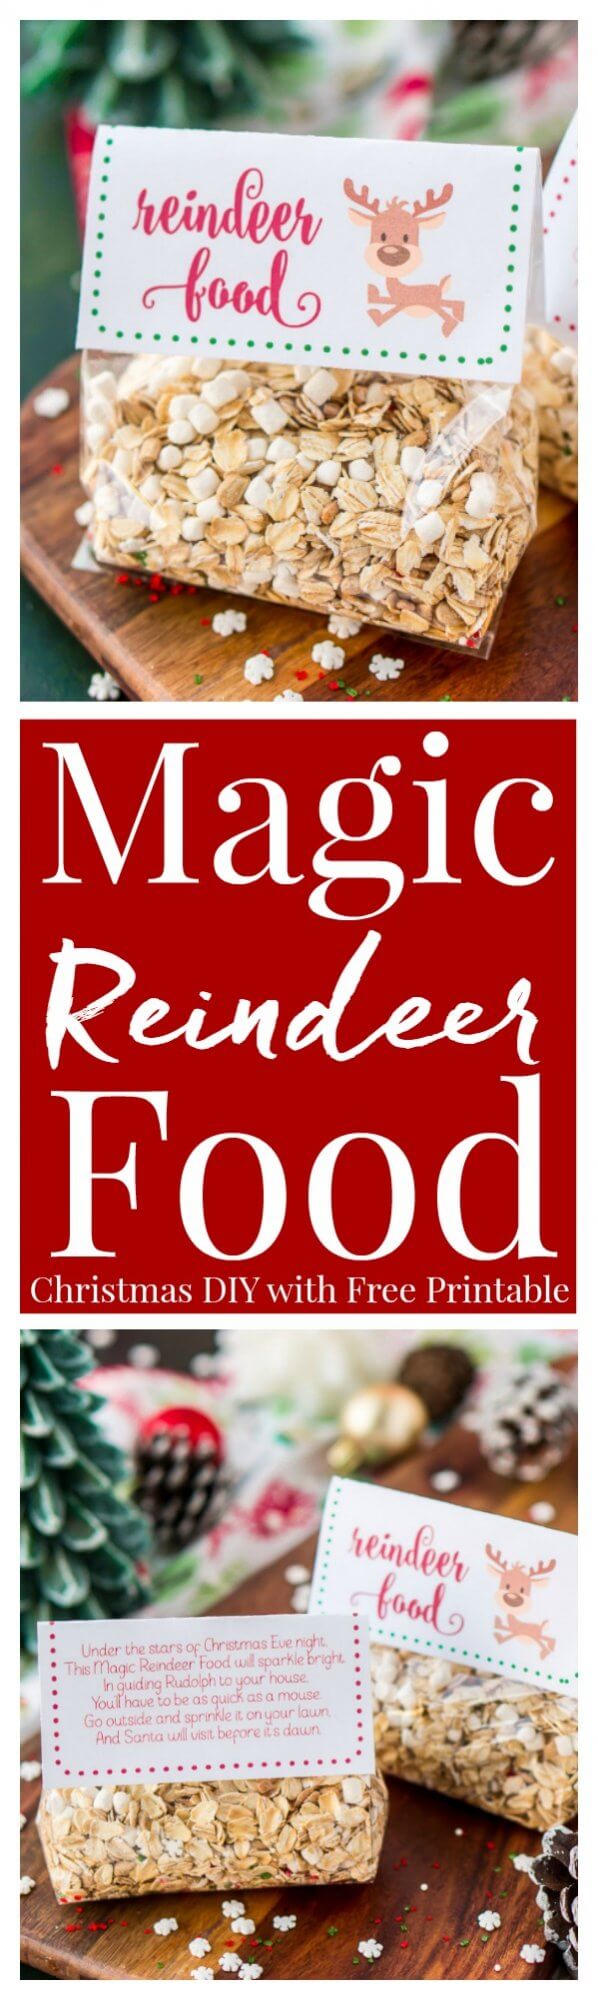 Magic Reindeer Food Recipe and Poem | Sugar and Soul